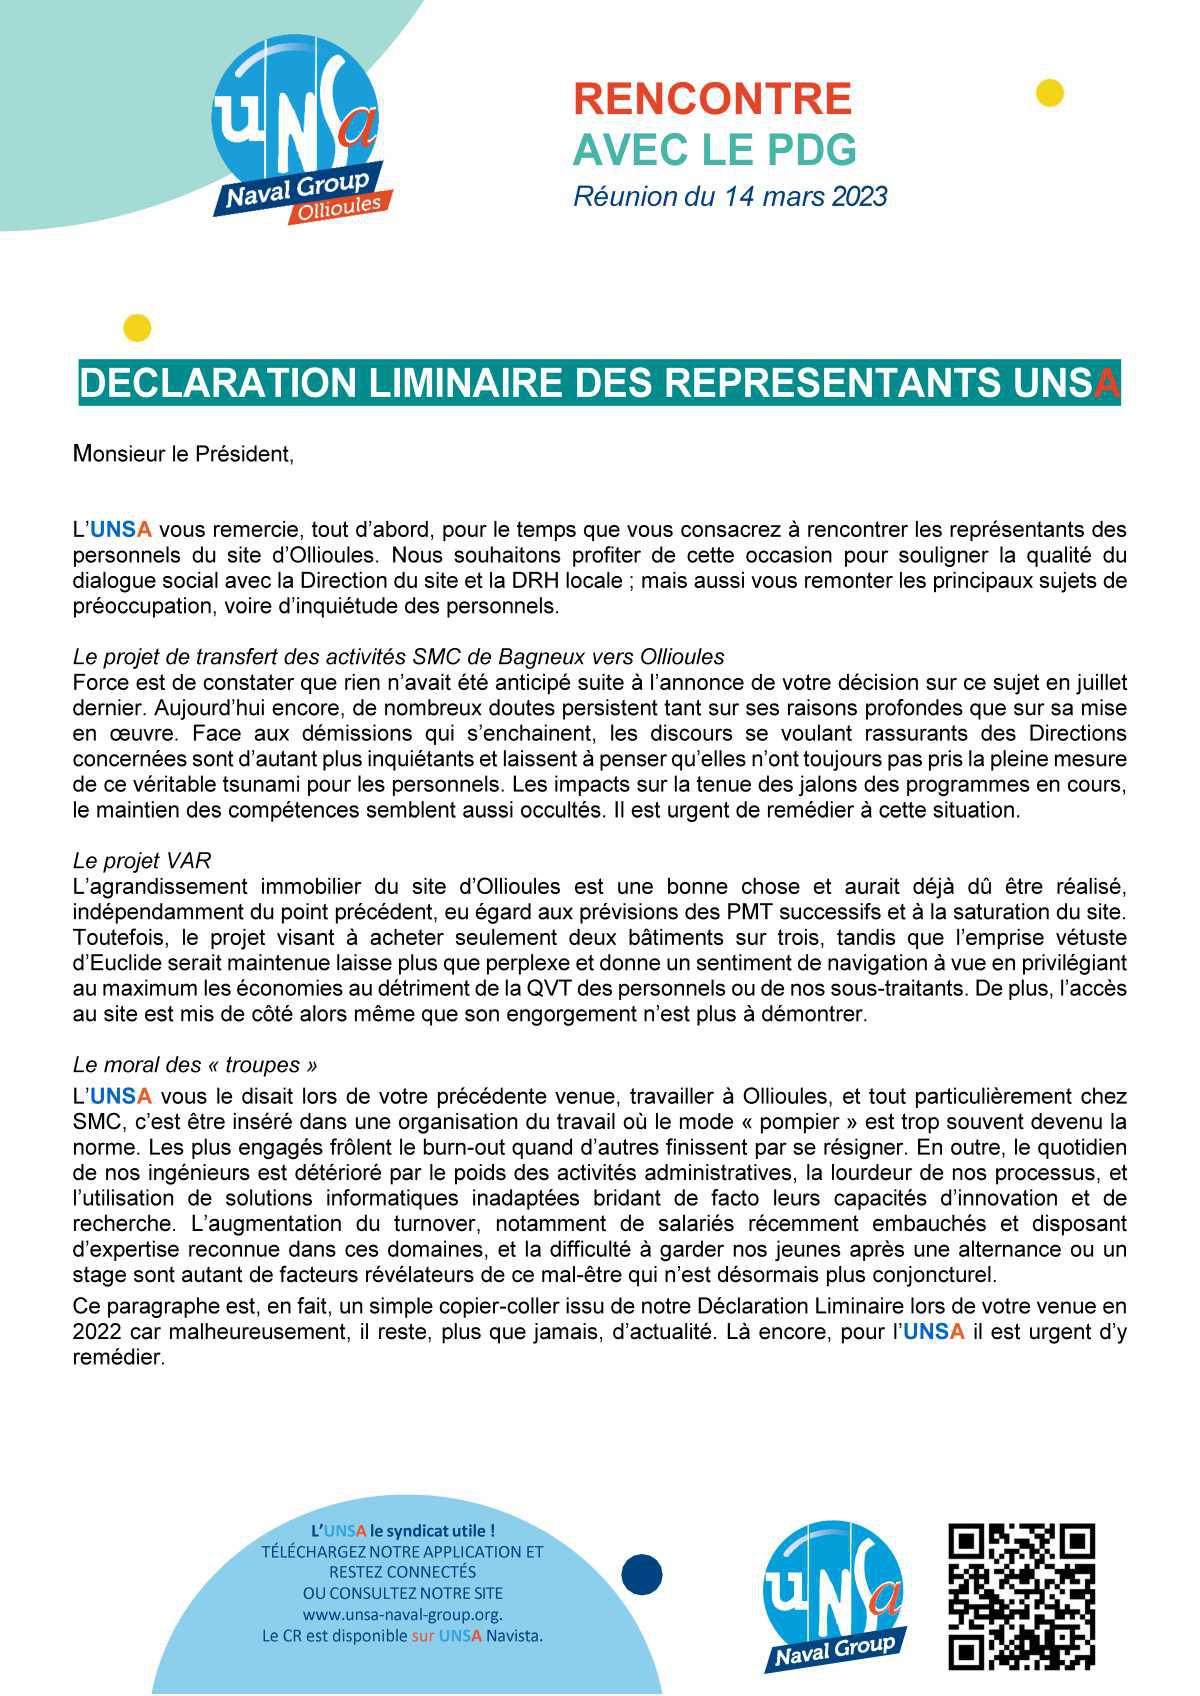 RENCONTRE AVEC LE PDG : Réunion du 14 mars 2023